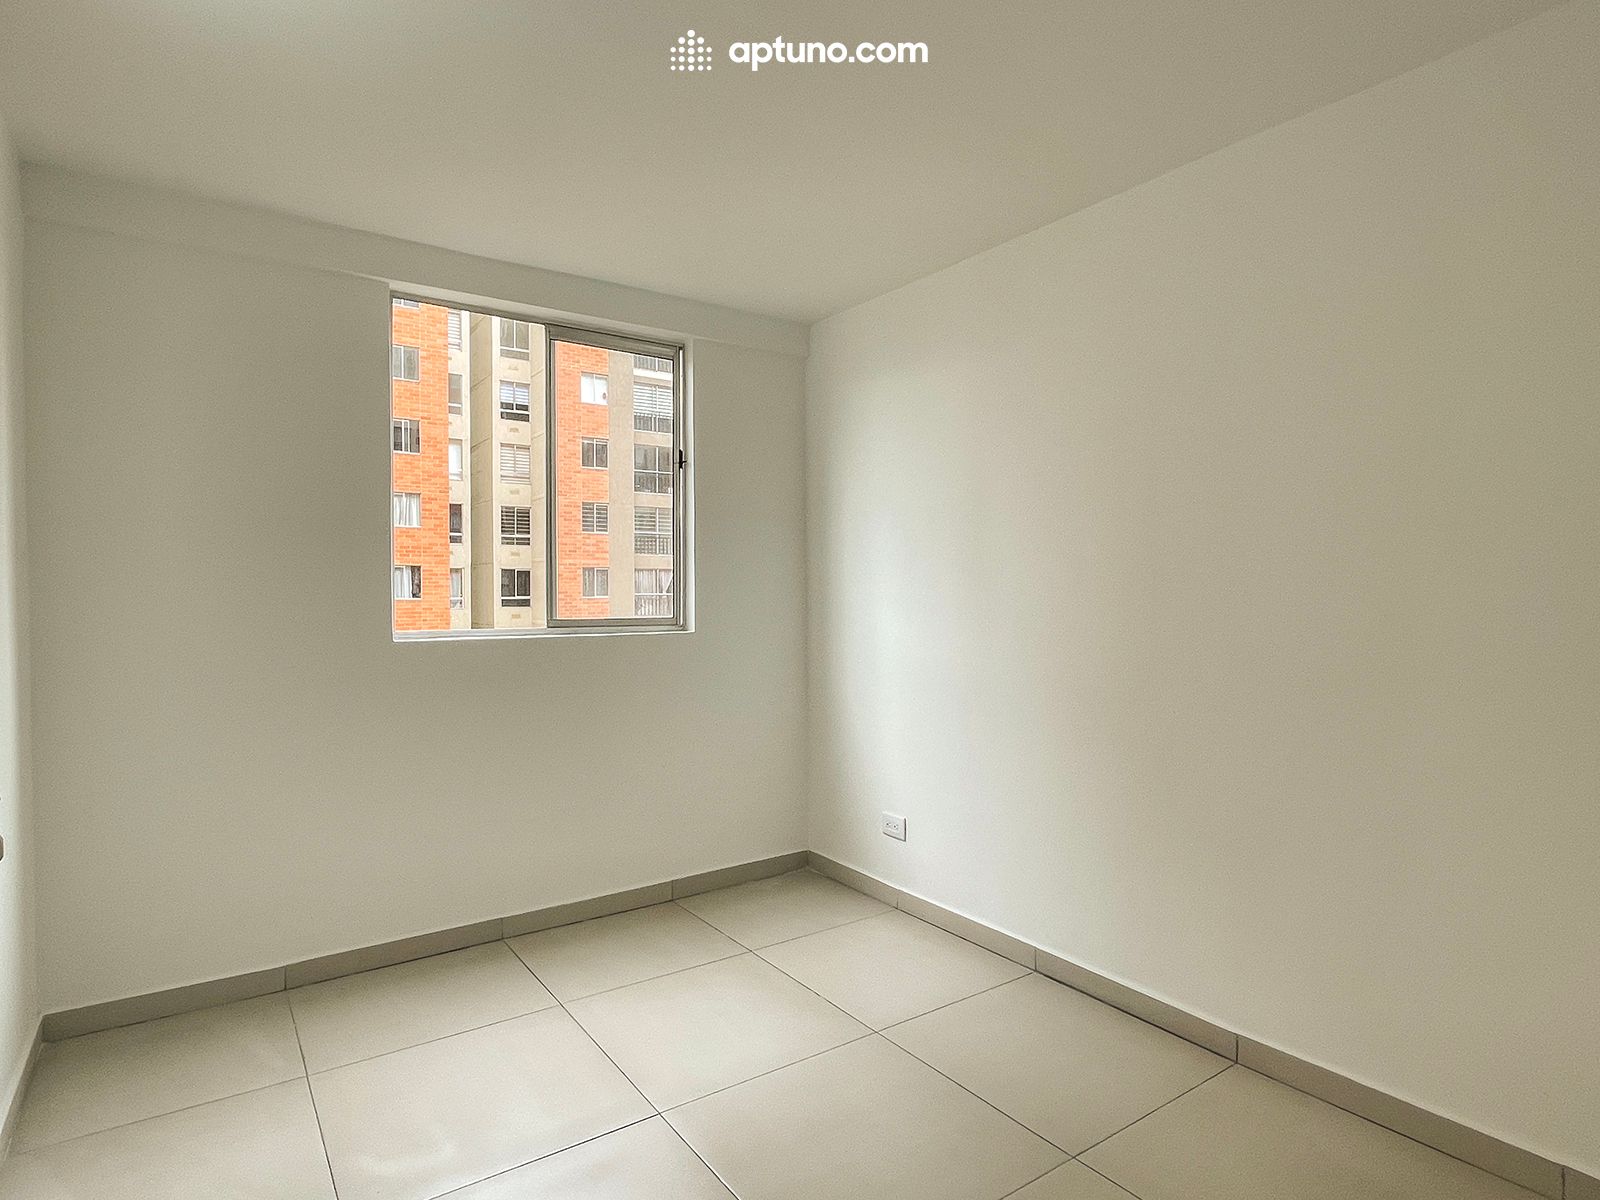 Apartamento en arriendo Rafael Escamilla 40 m² - $ 1.200.000